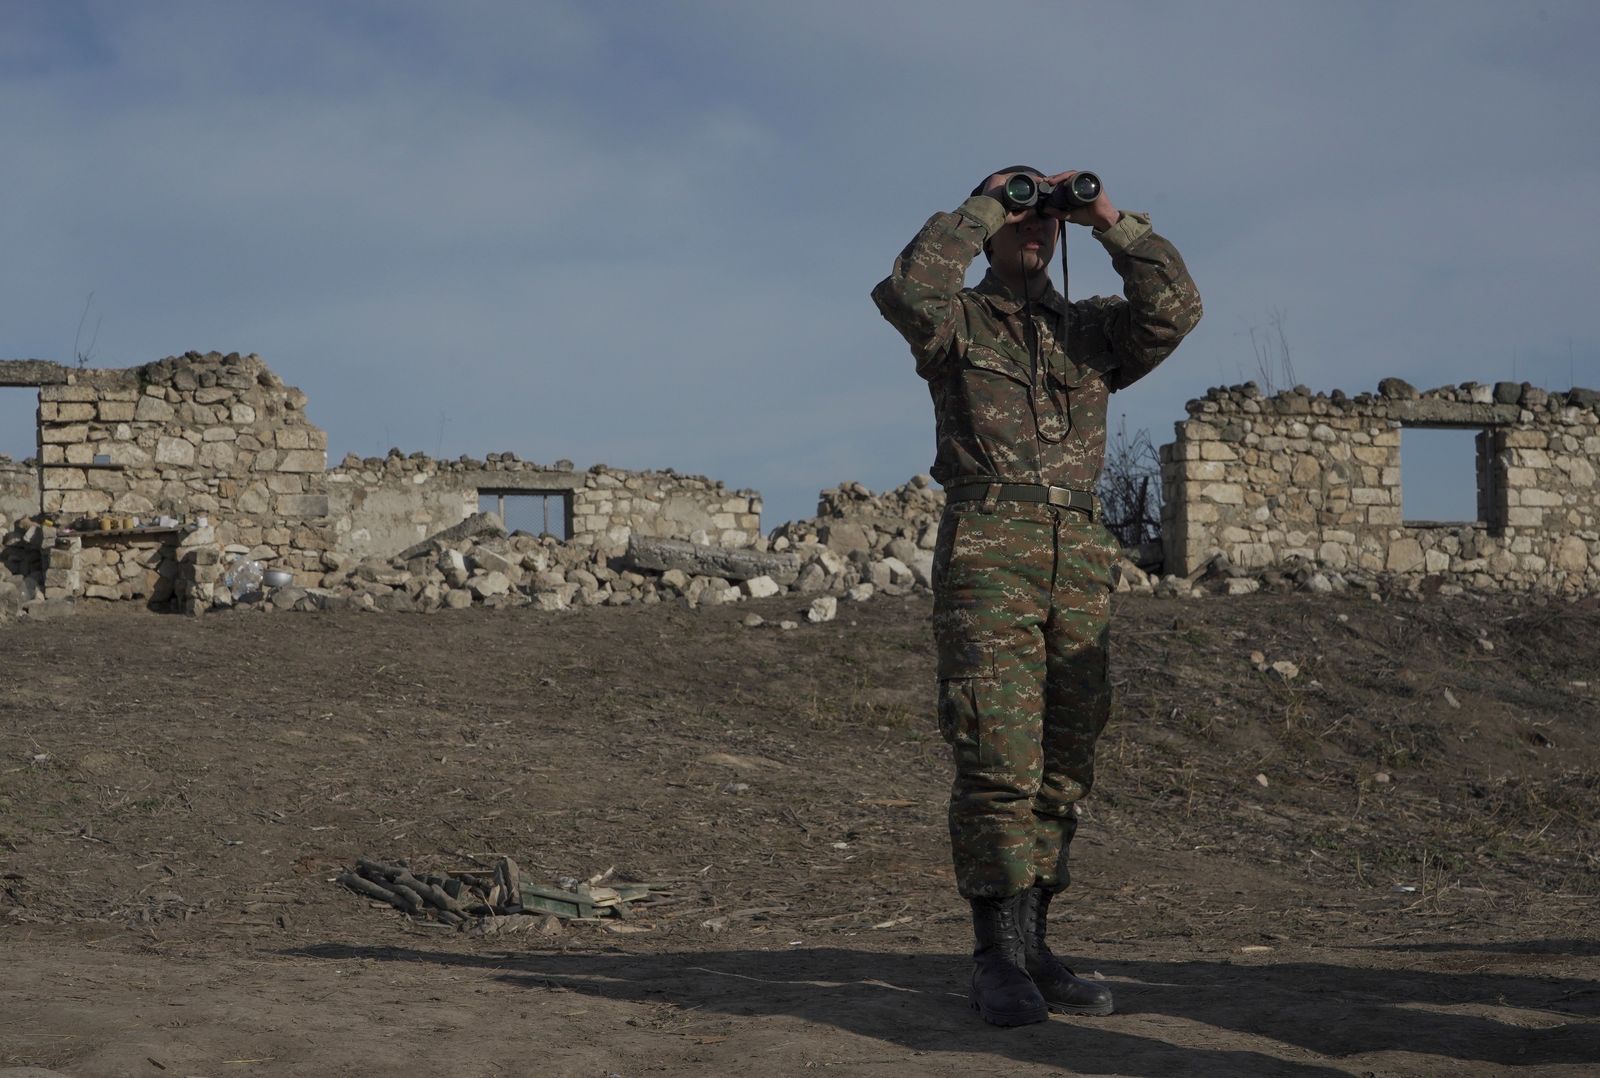 جندي أرمني يستخدم منظاراً في مواقع قتالية بناجورنو قره باغ - 11 يناير 2021 - REUTERS